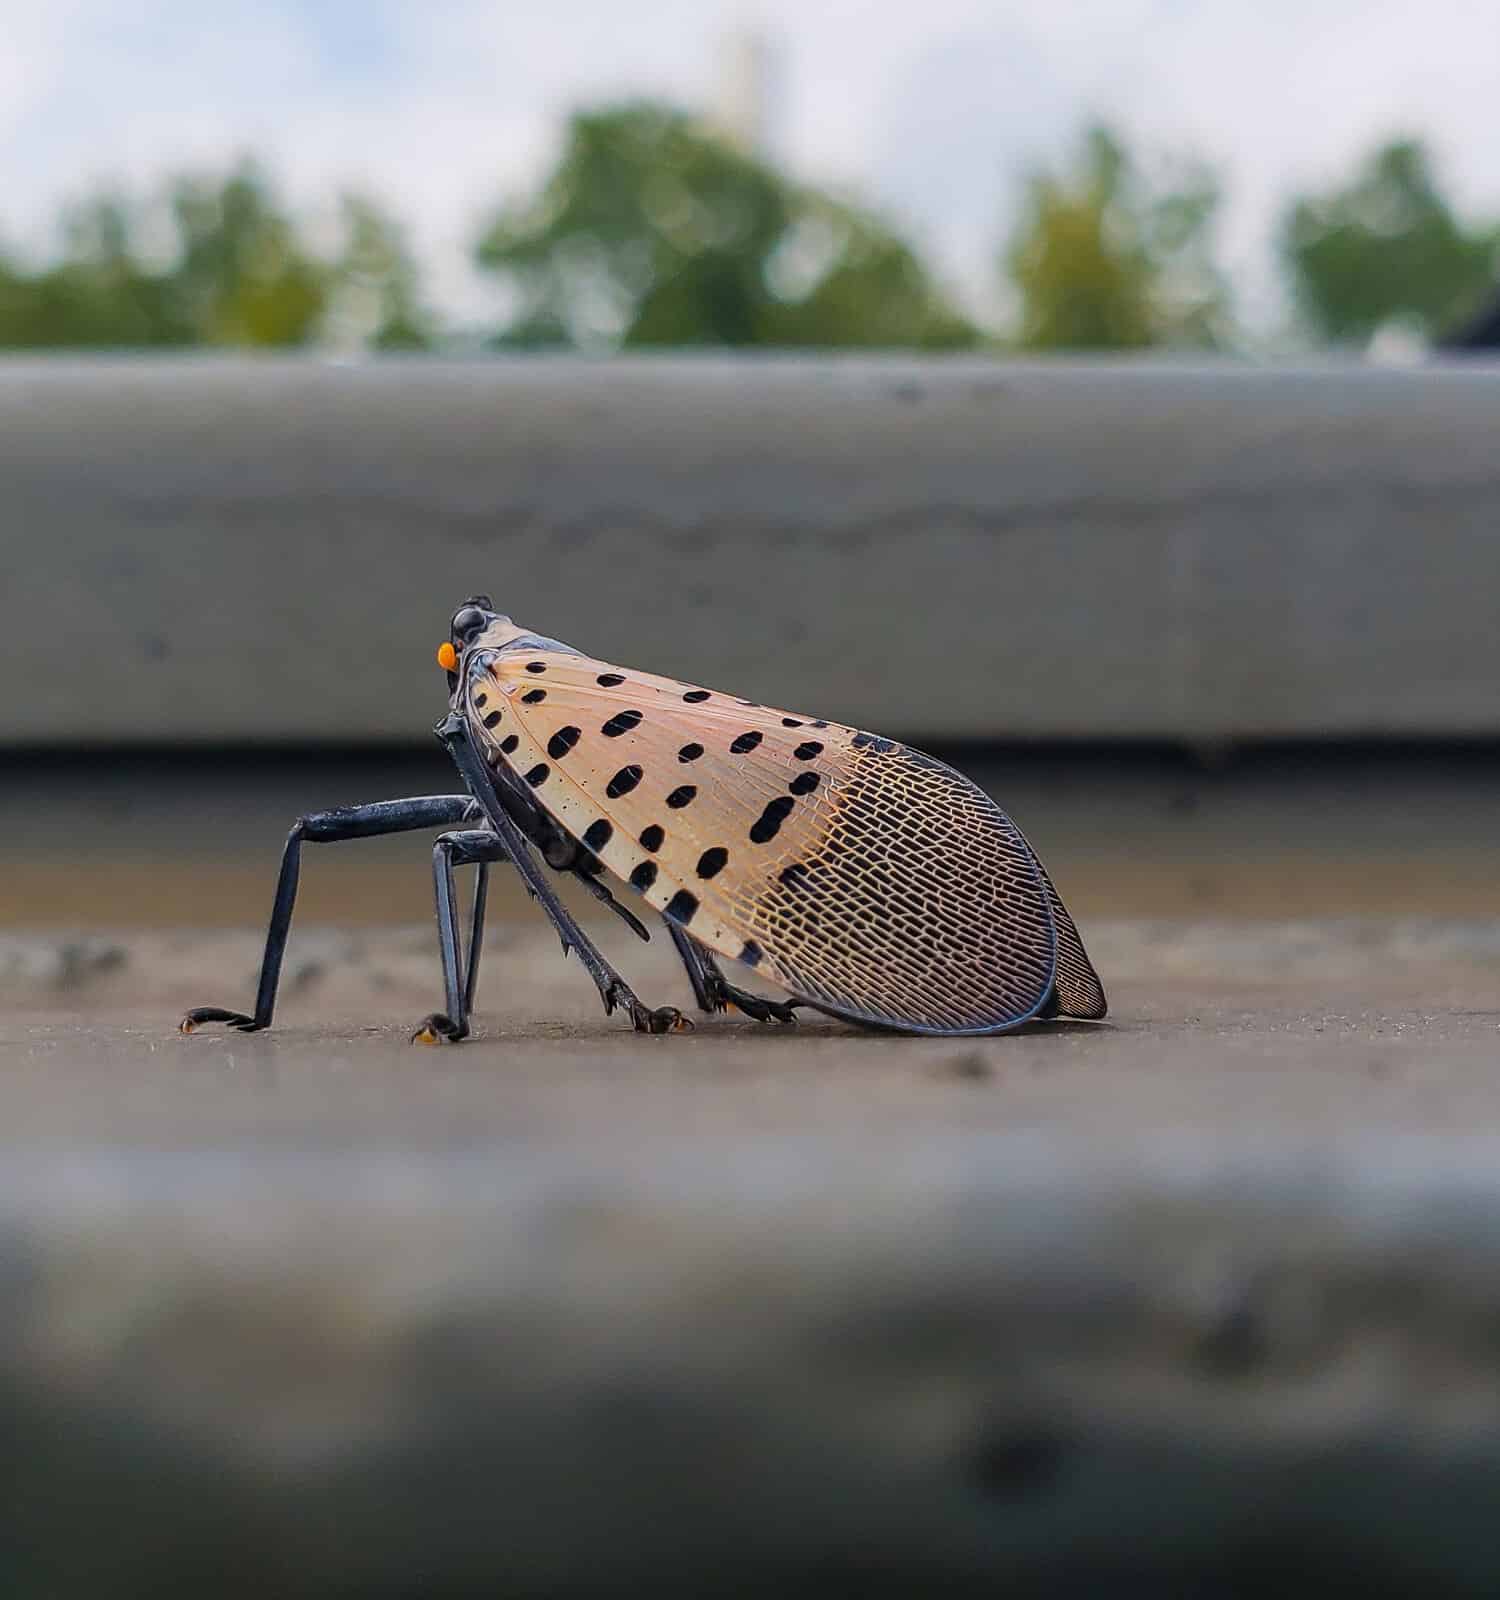 Laternfly maculato adulto fotografato in Pennsylvania.  Questo insetto proviene dall'Asia ed è considerato invasivo e altamente dannoso per l'agricoltura negli Stati Uniti.